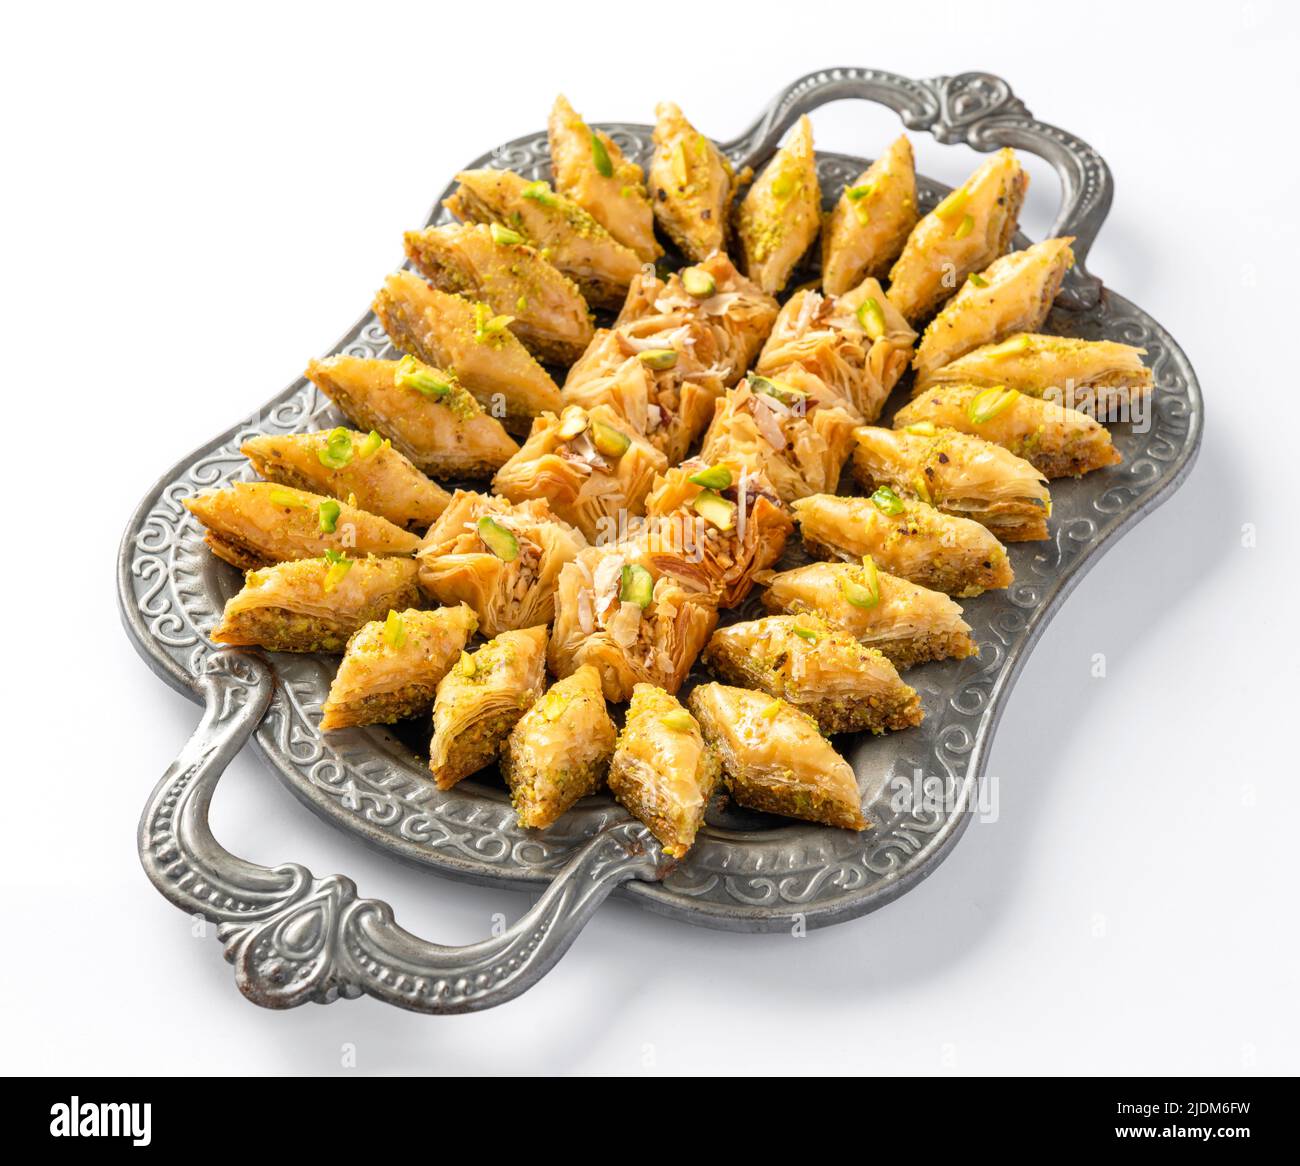 Le baklava est un en-cas méditerranéen, sucré, délicieux et feuilleté. Fait de feuilles de pâte filo et farci de noix. Banque D'Images